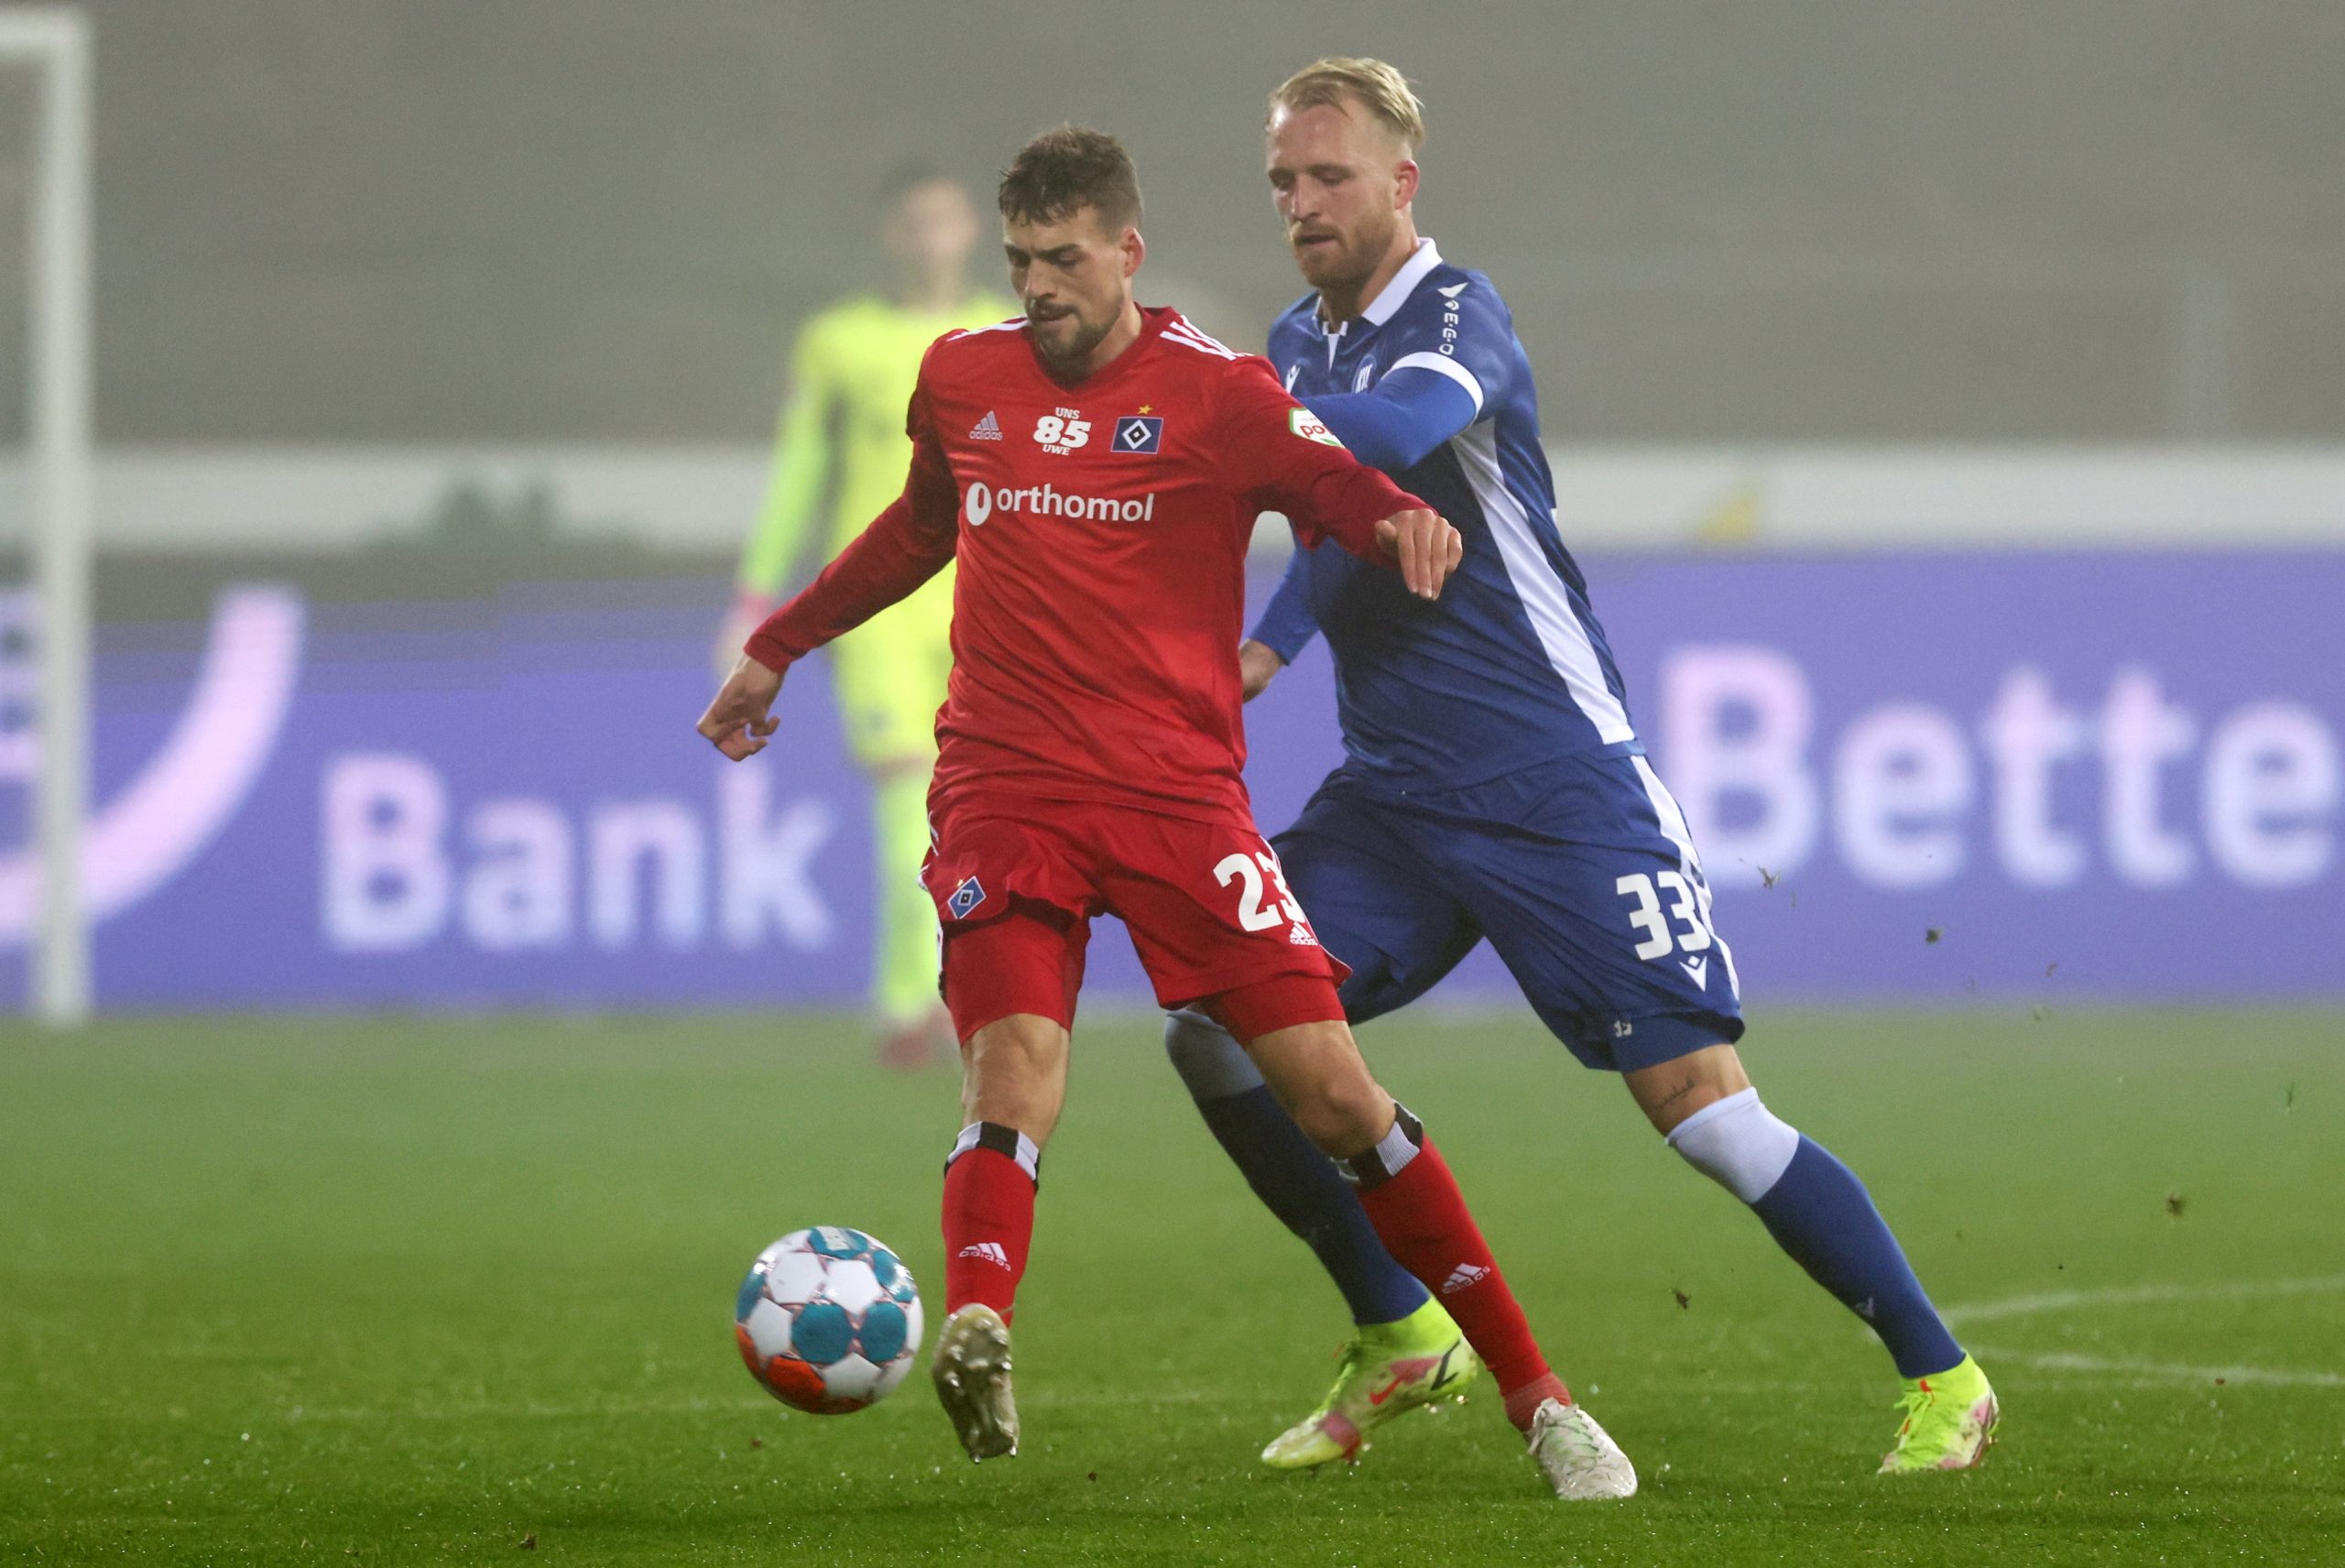 HSV-Profi Jonas Meffert gegen Karlsruhes Philipp Hofmann